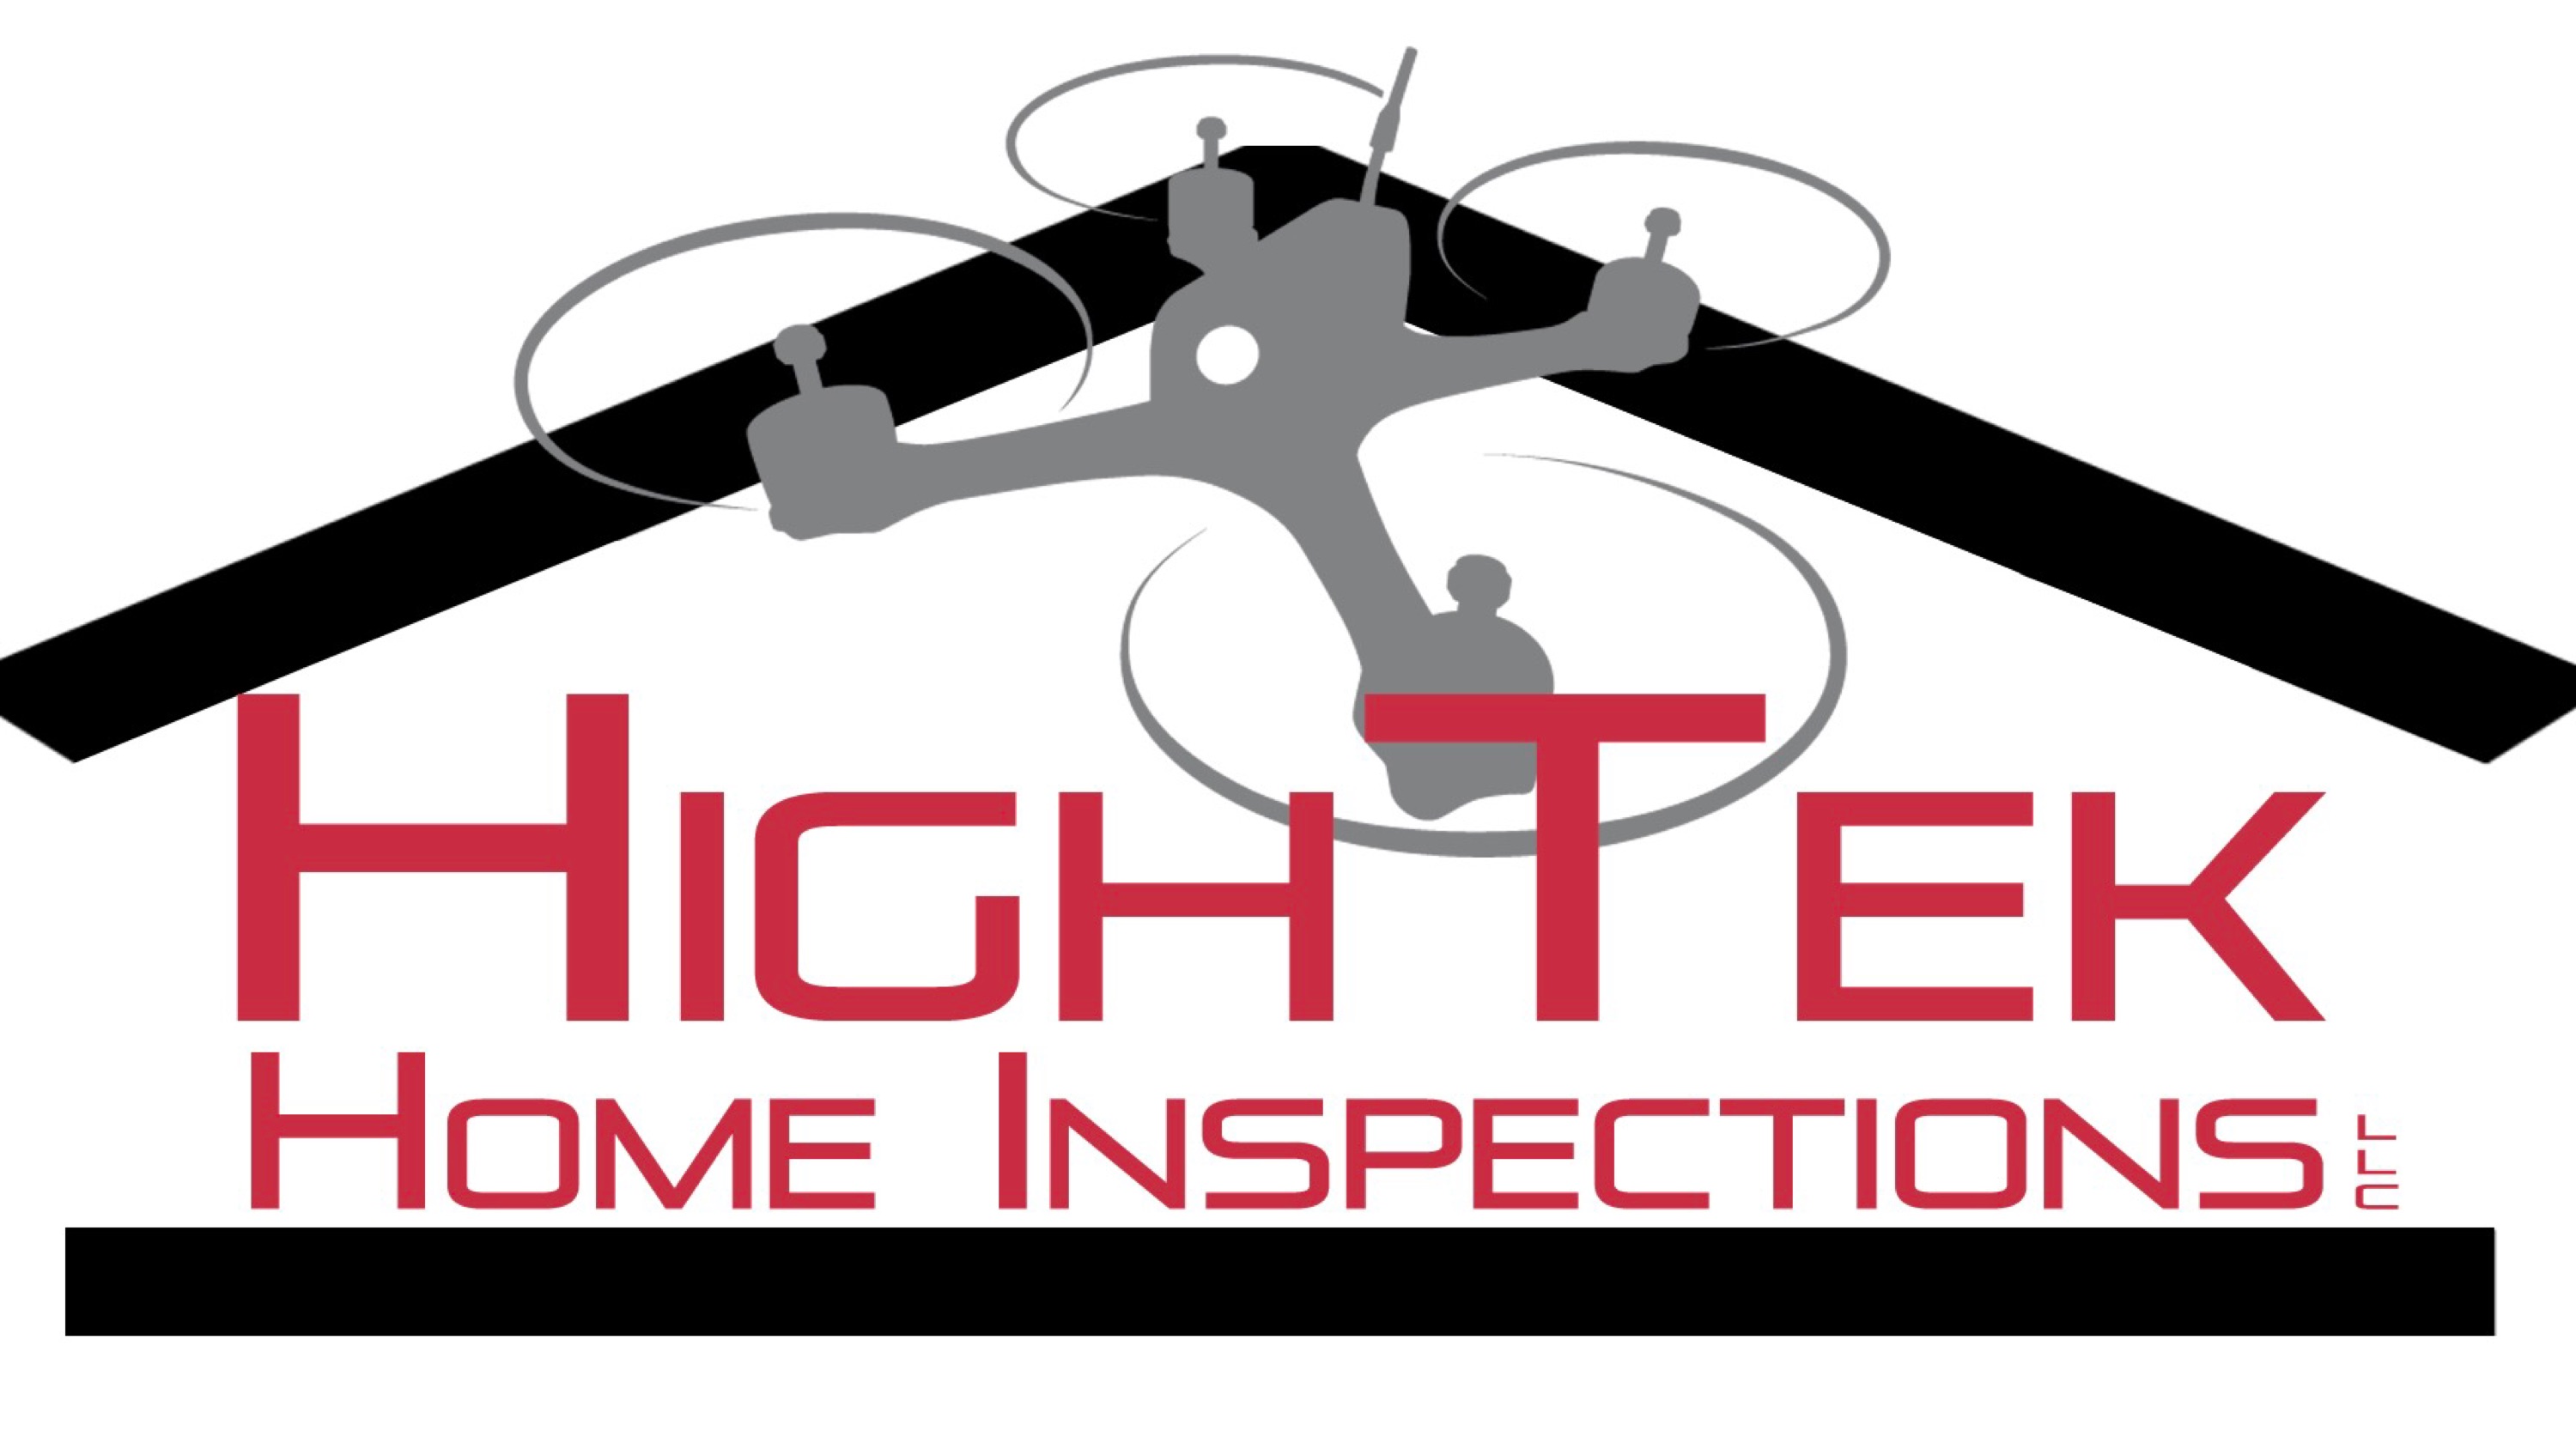 HighTek Home Inspections, LLC Logo